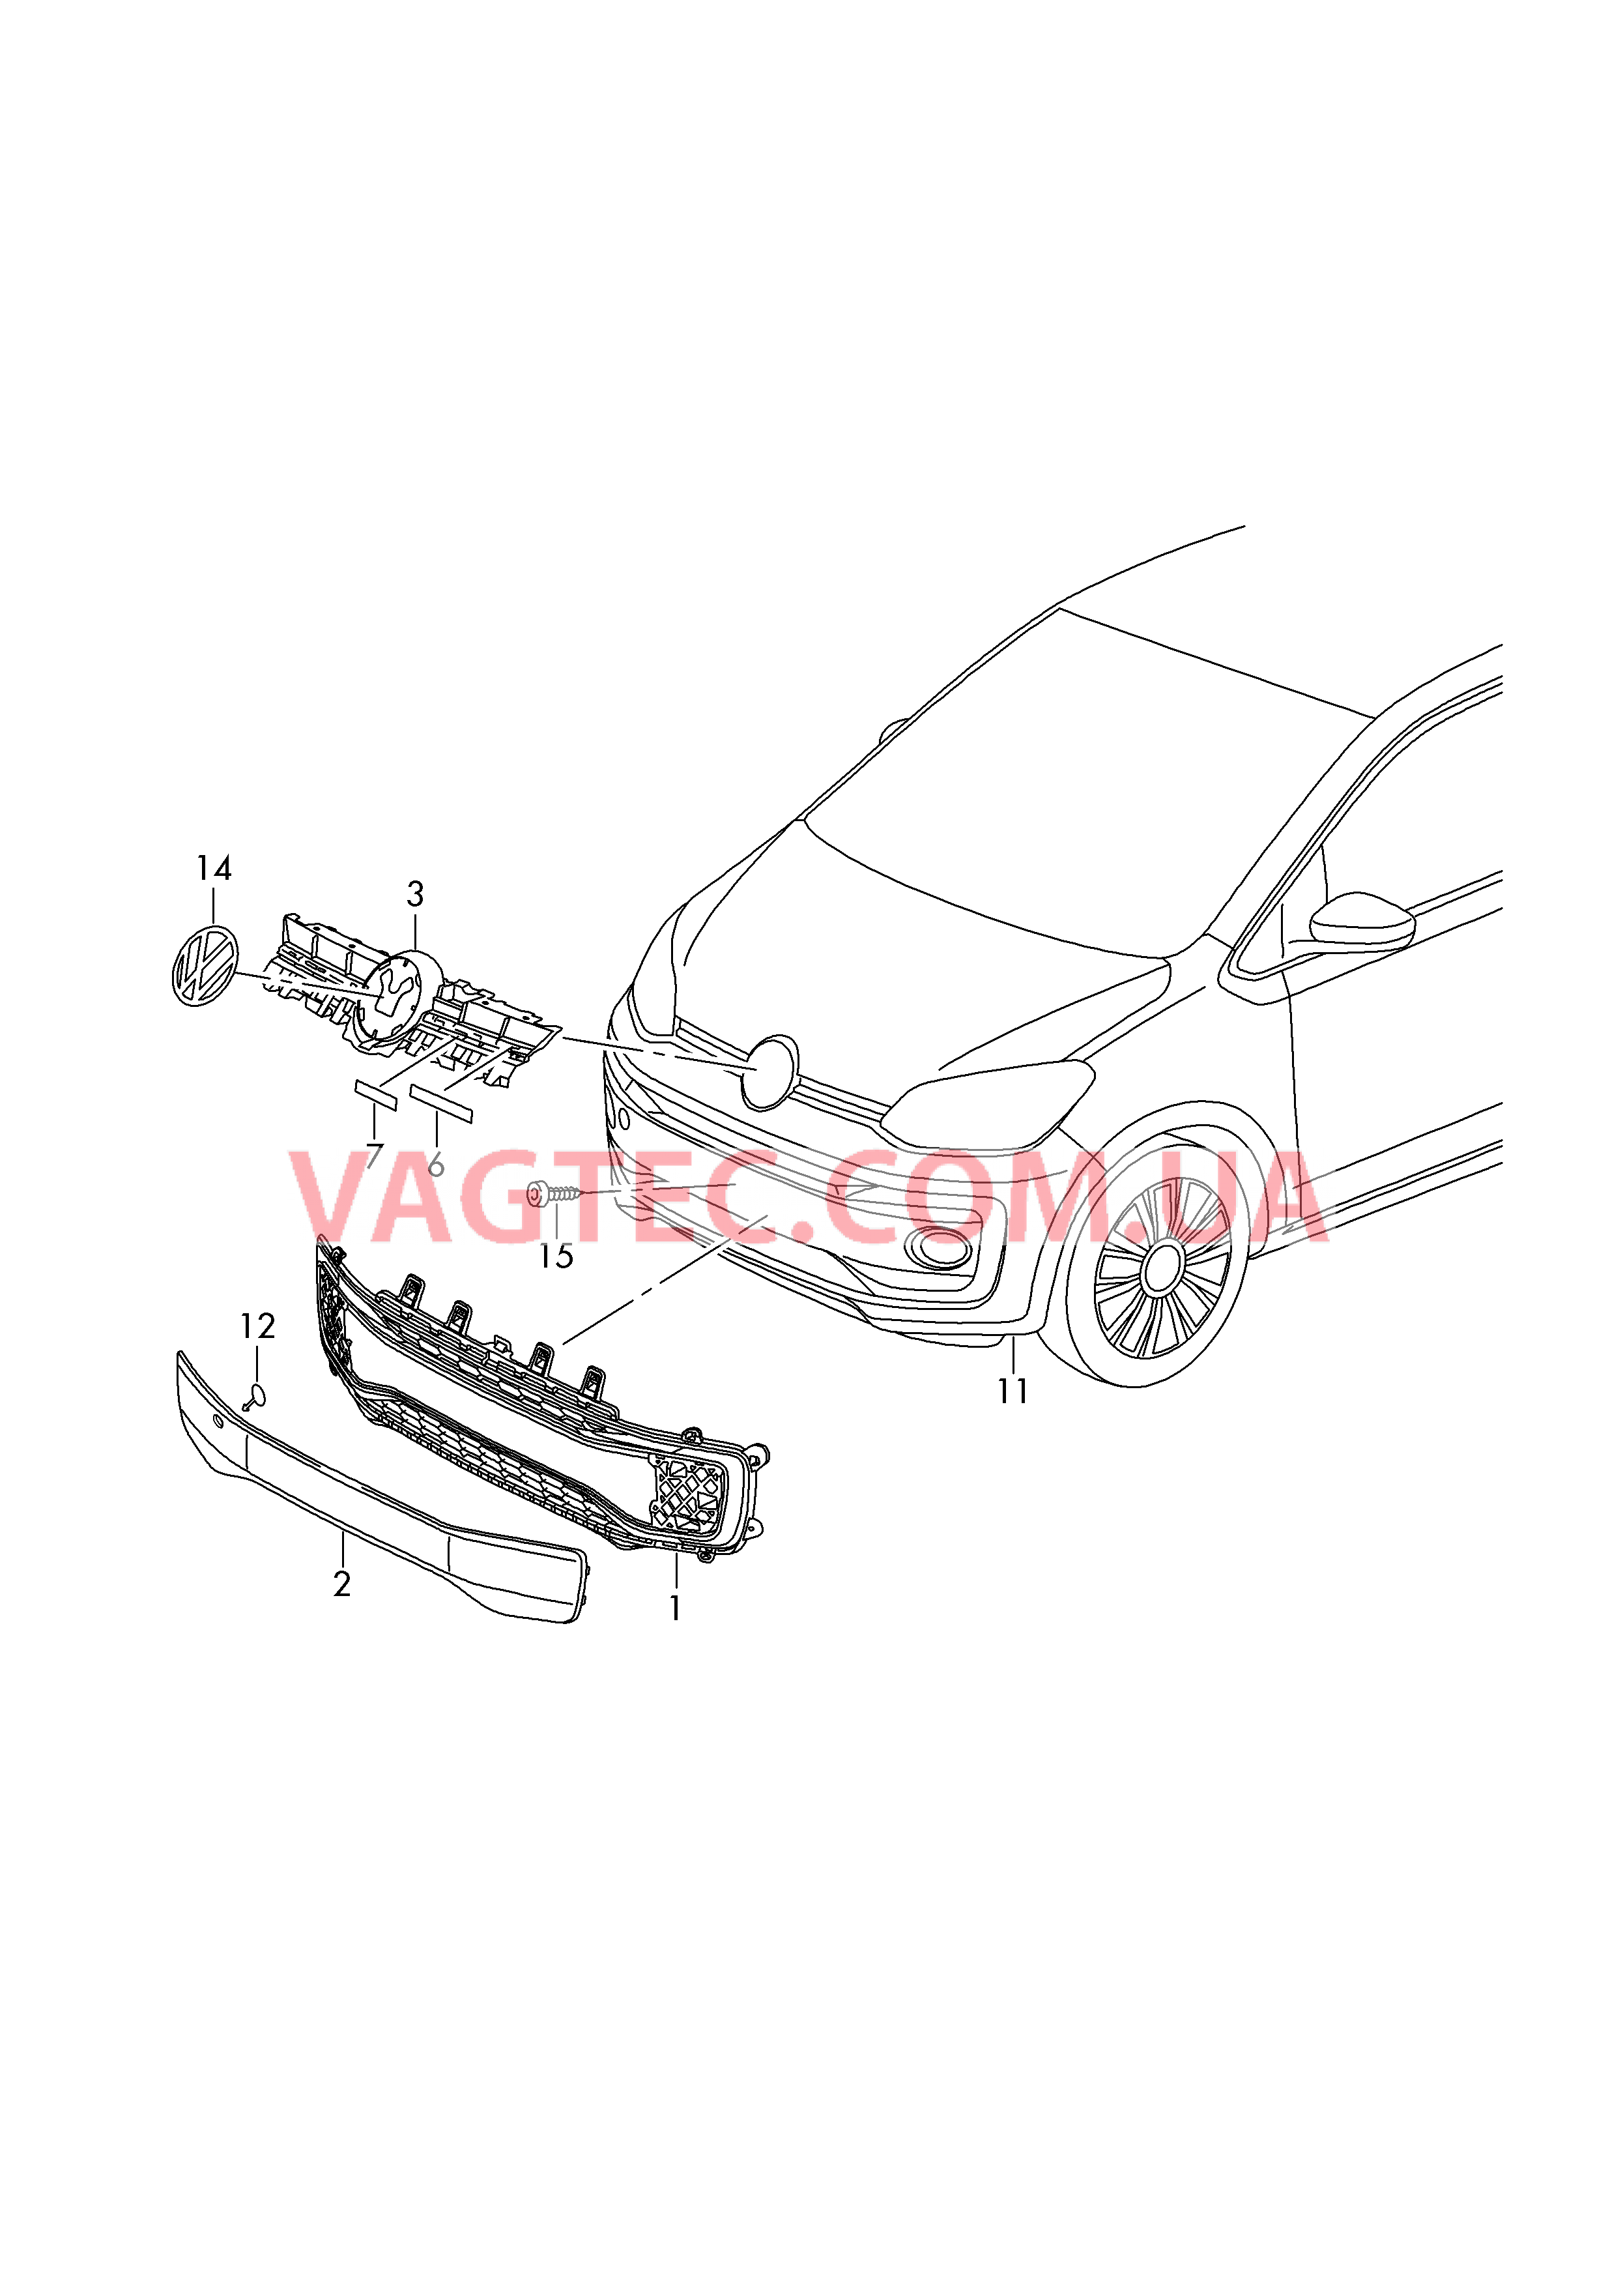 Pешетка радиатора Эмблема VW  для VOLKSWAGEN UP 2018-1